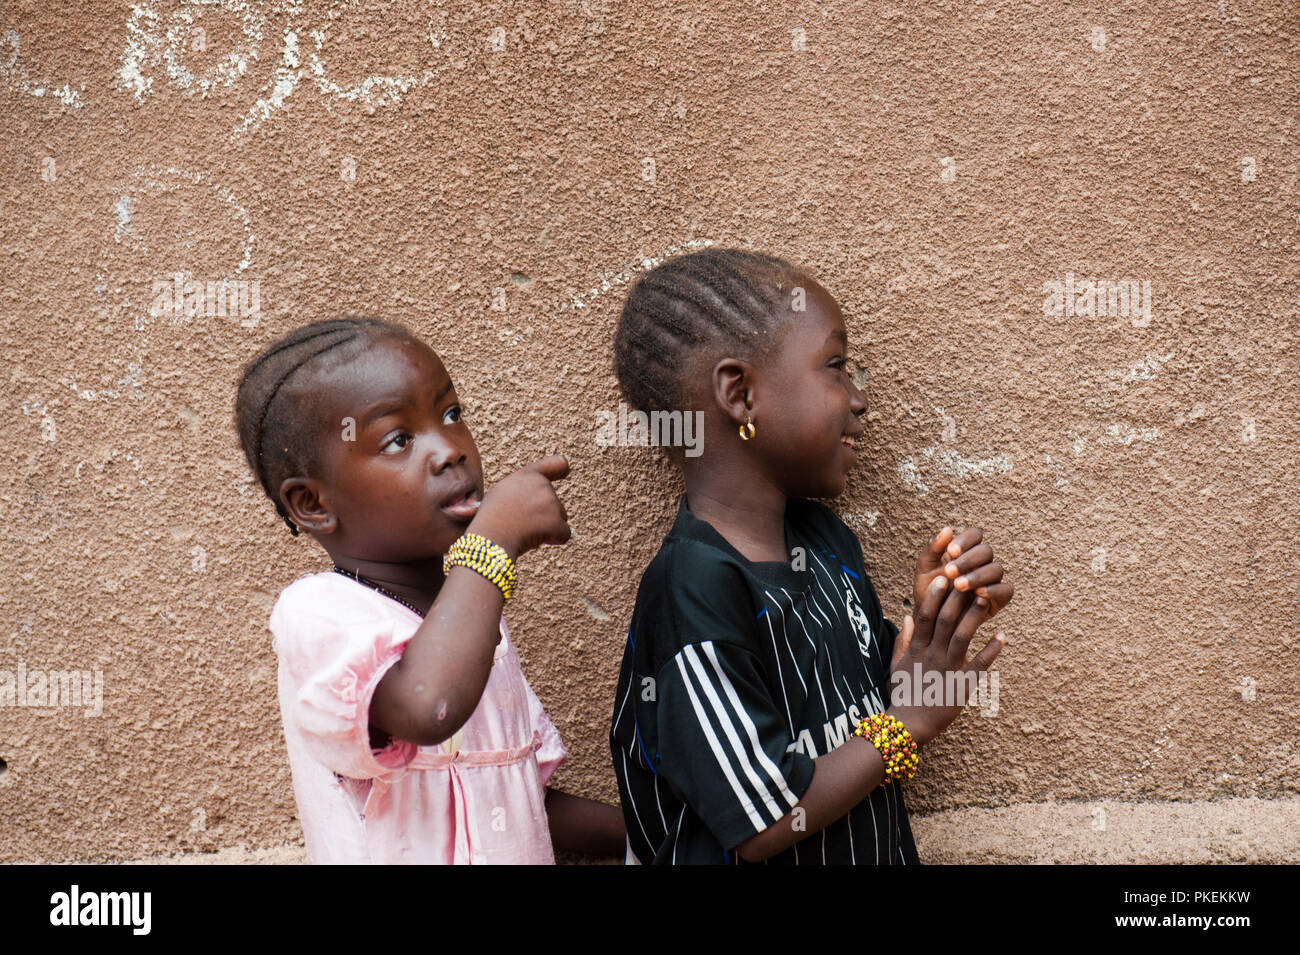 Mali, Afrika - ca. August 2009 - Zwei schwarzen afrikanischen Schwestern Spaß in einem ländlichen Gebiet lebt in der Nähe von Bamako Stockfoto